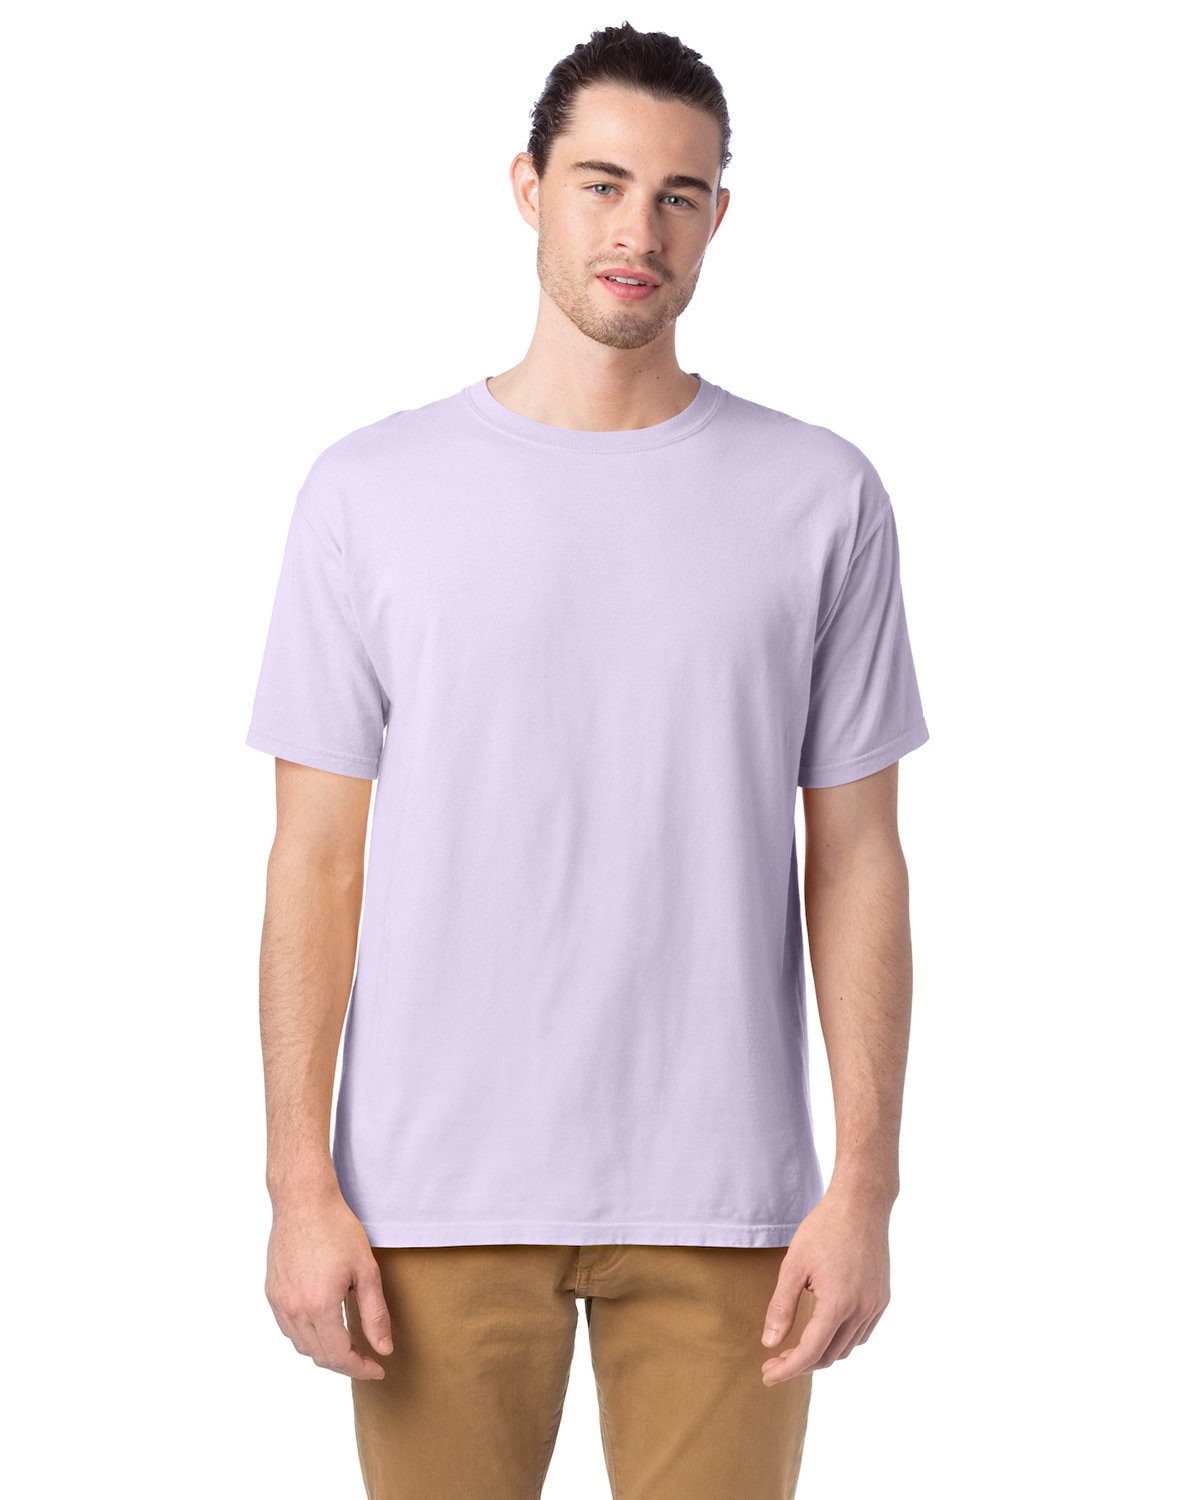 ComfortWash by Hanes Men's Garment-Dyed T-Shirt FUTURE LAVENDER 